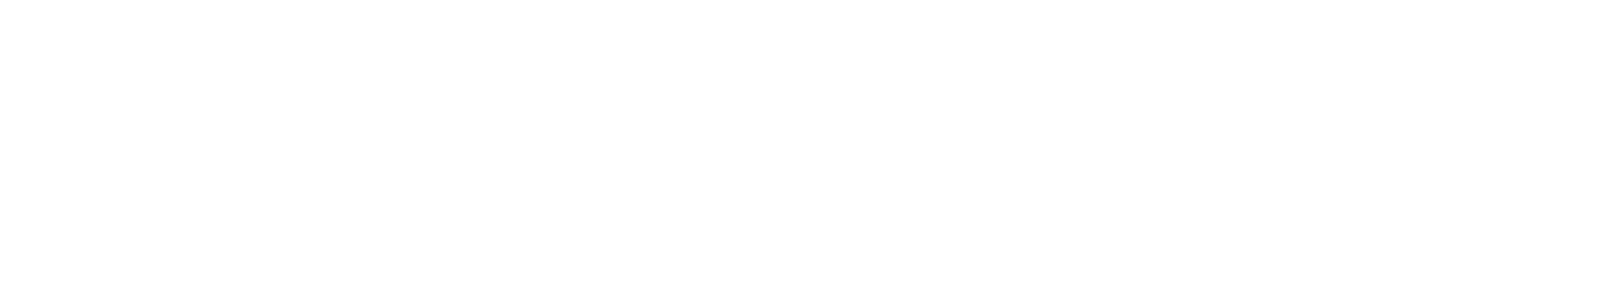 Manulife Financial Logo groß für dunkle Hintergründe (transparentes PNG)